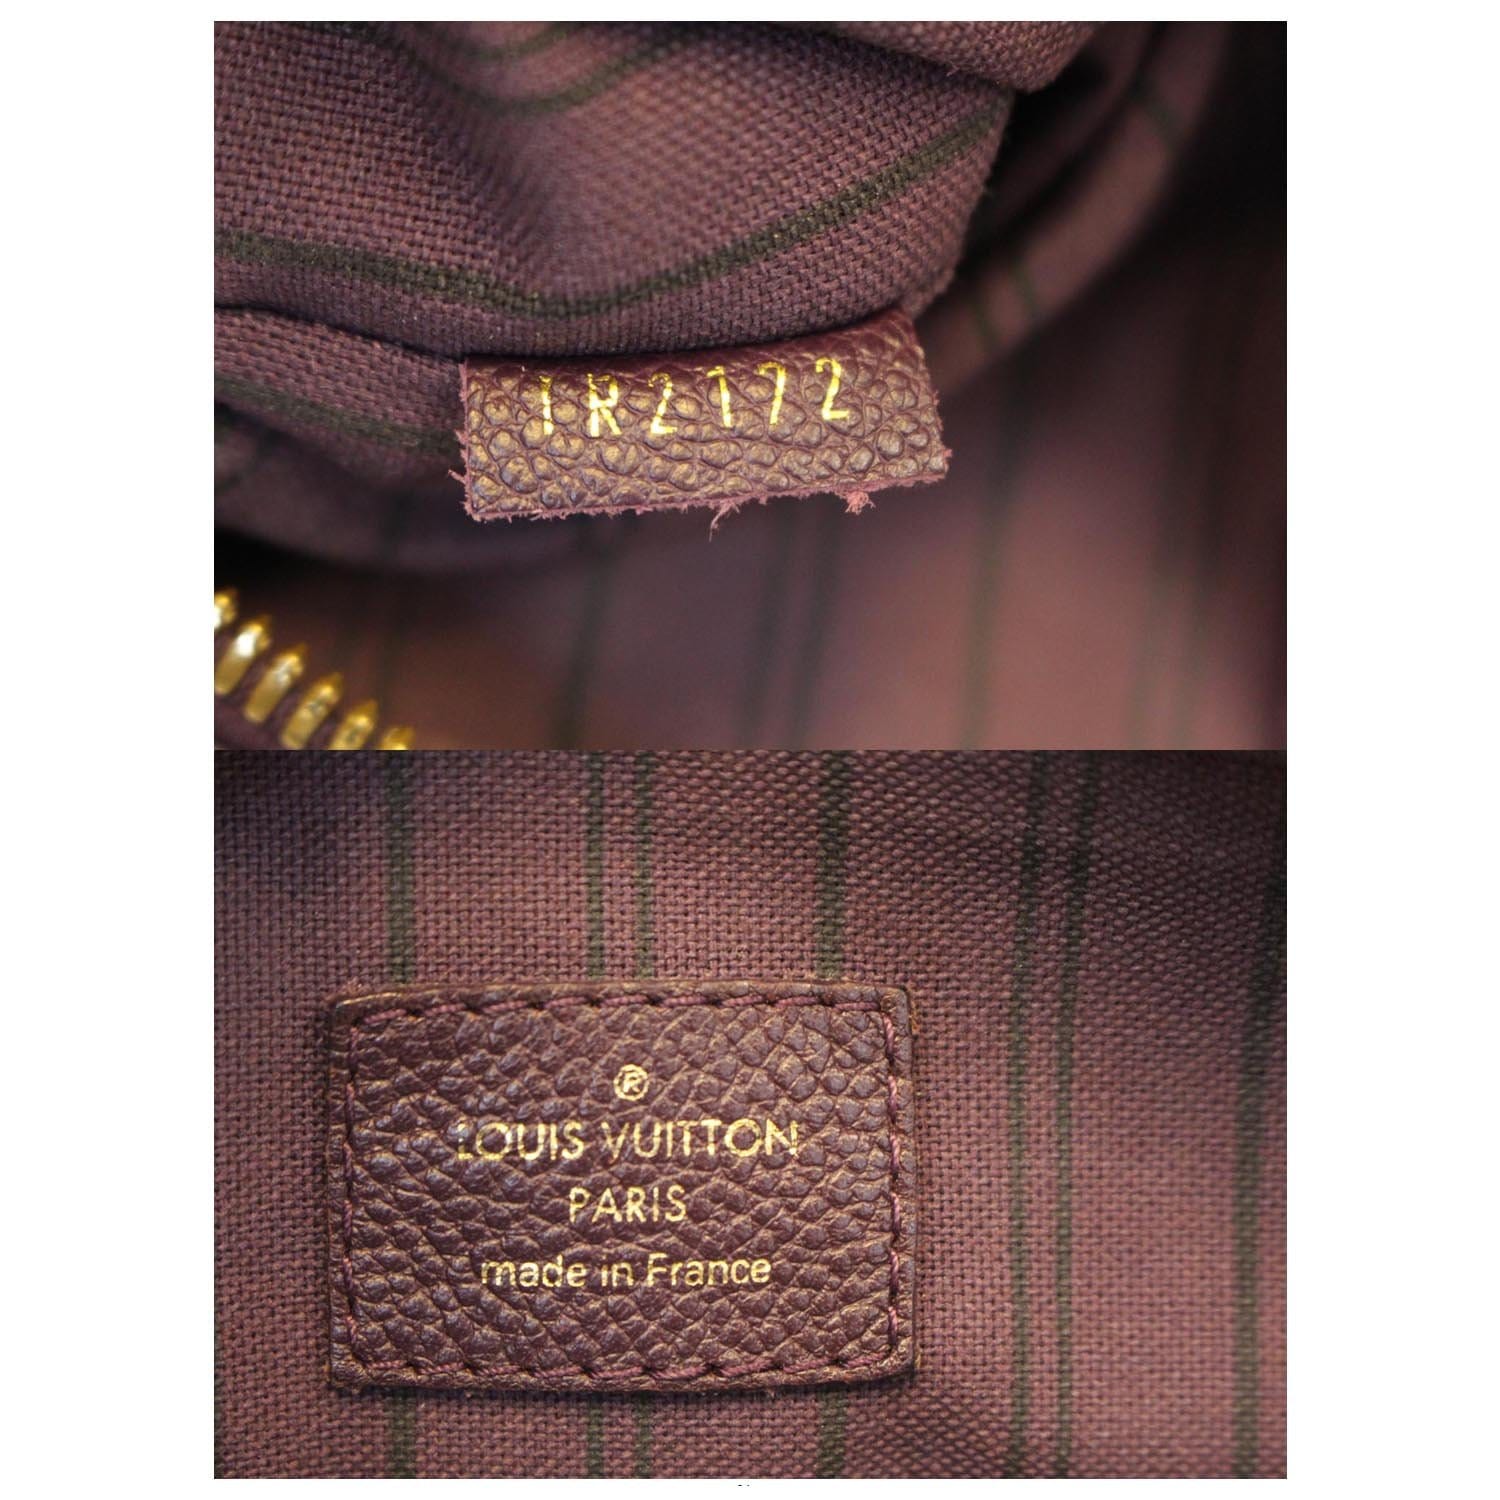 Louis Vuitton Empreinte Large Ring, Pink Gold. Size 56